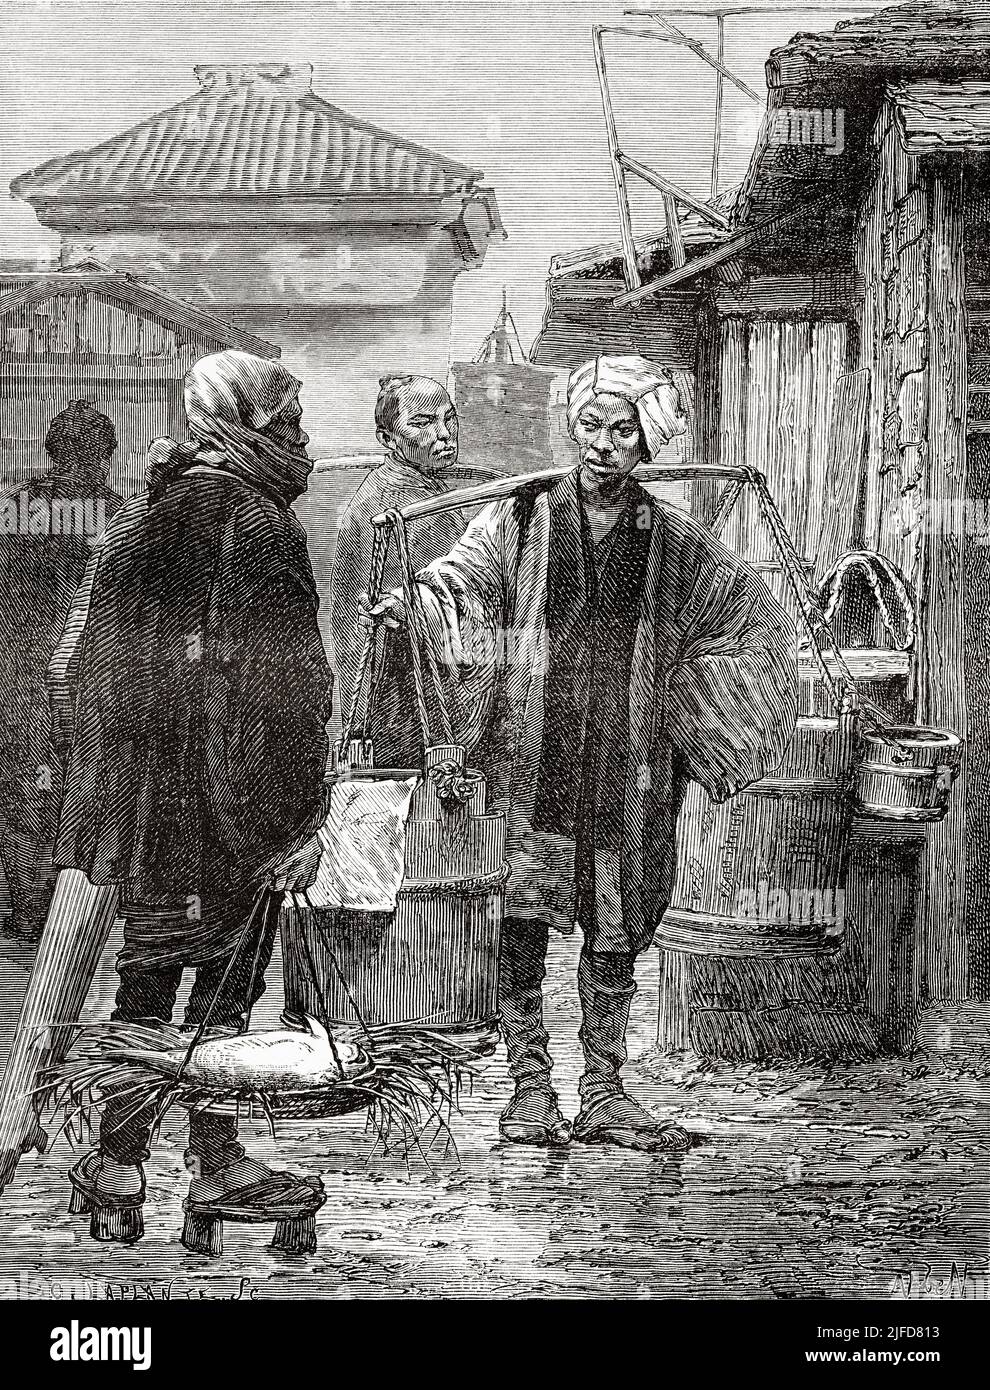 Mercado de pescado, Tokio. Japón, Asia. Viaje a Japón en Aime Humbert 1863-1864 desde Le Tour du Monde 1867 Foto de stock